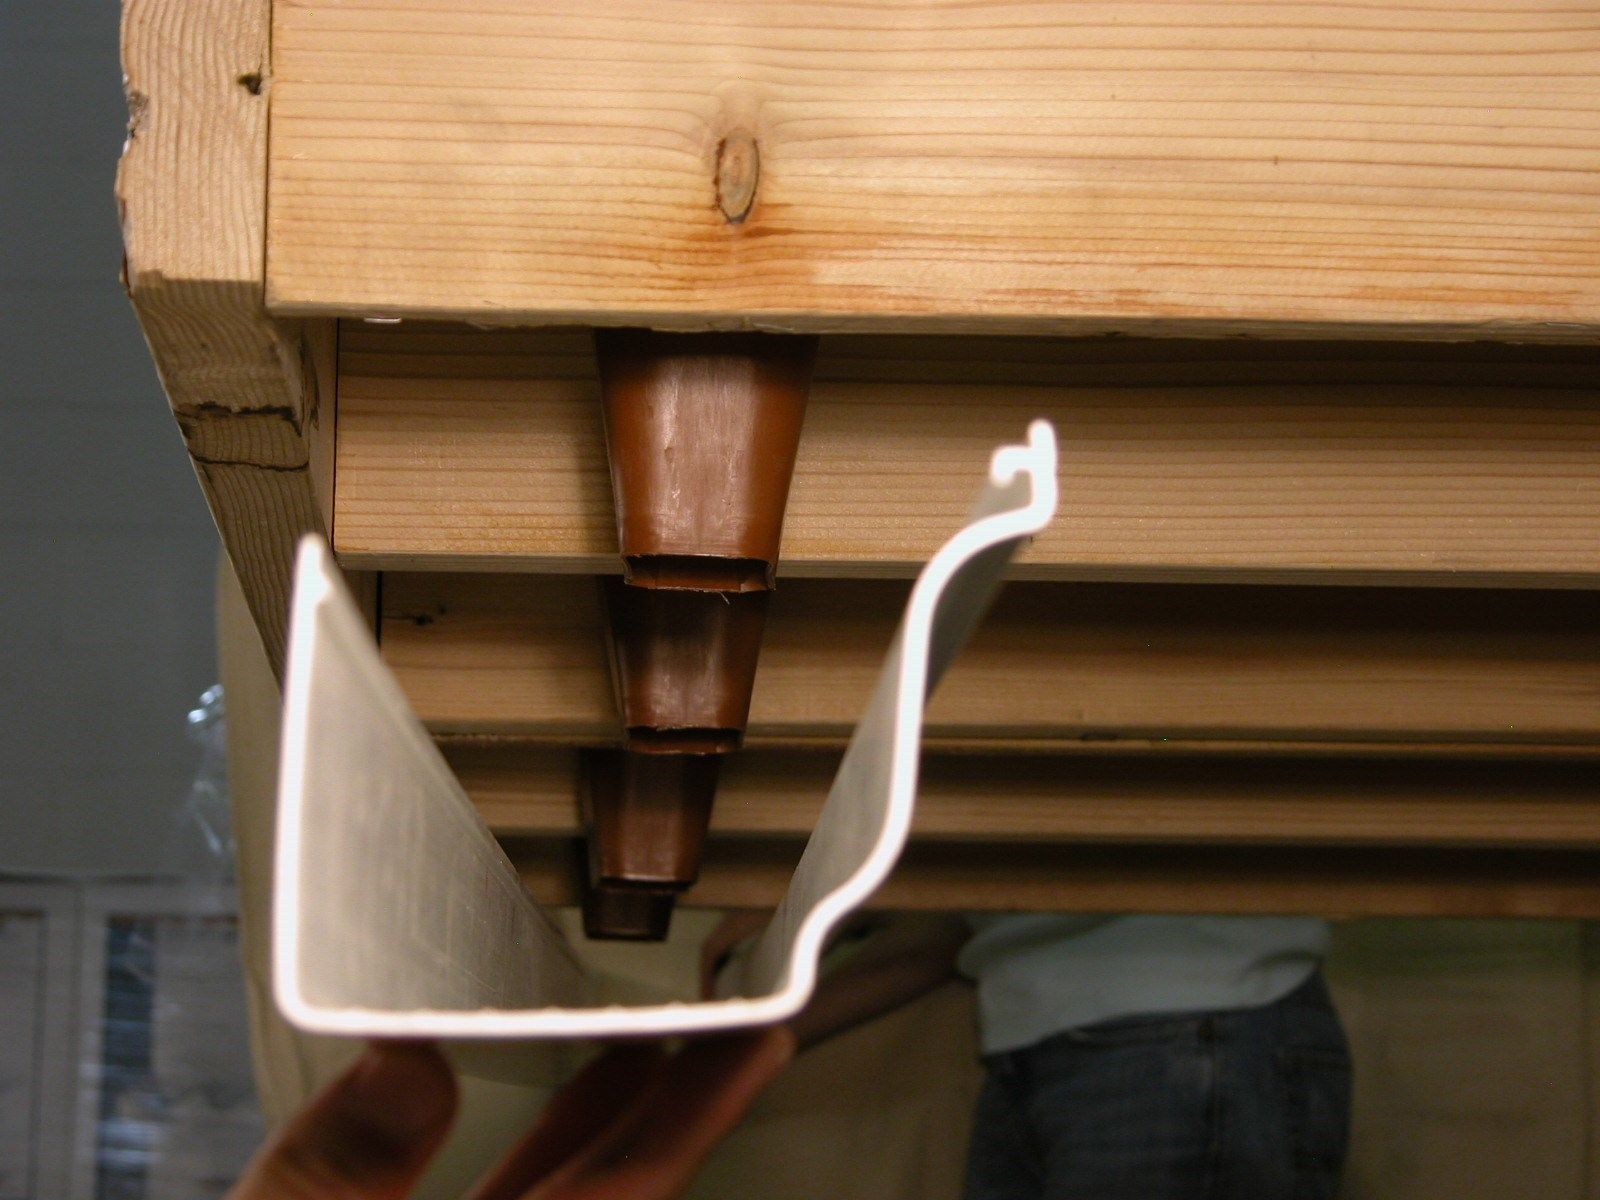 How to Install Under Deck Drainage Systems | Decks.com